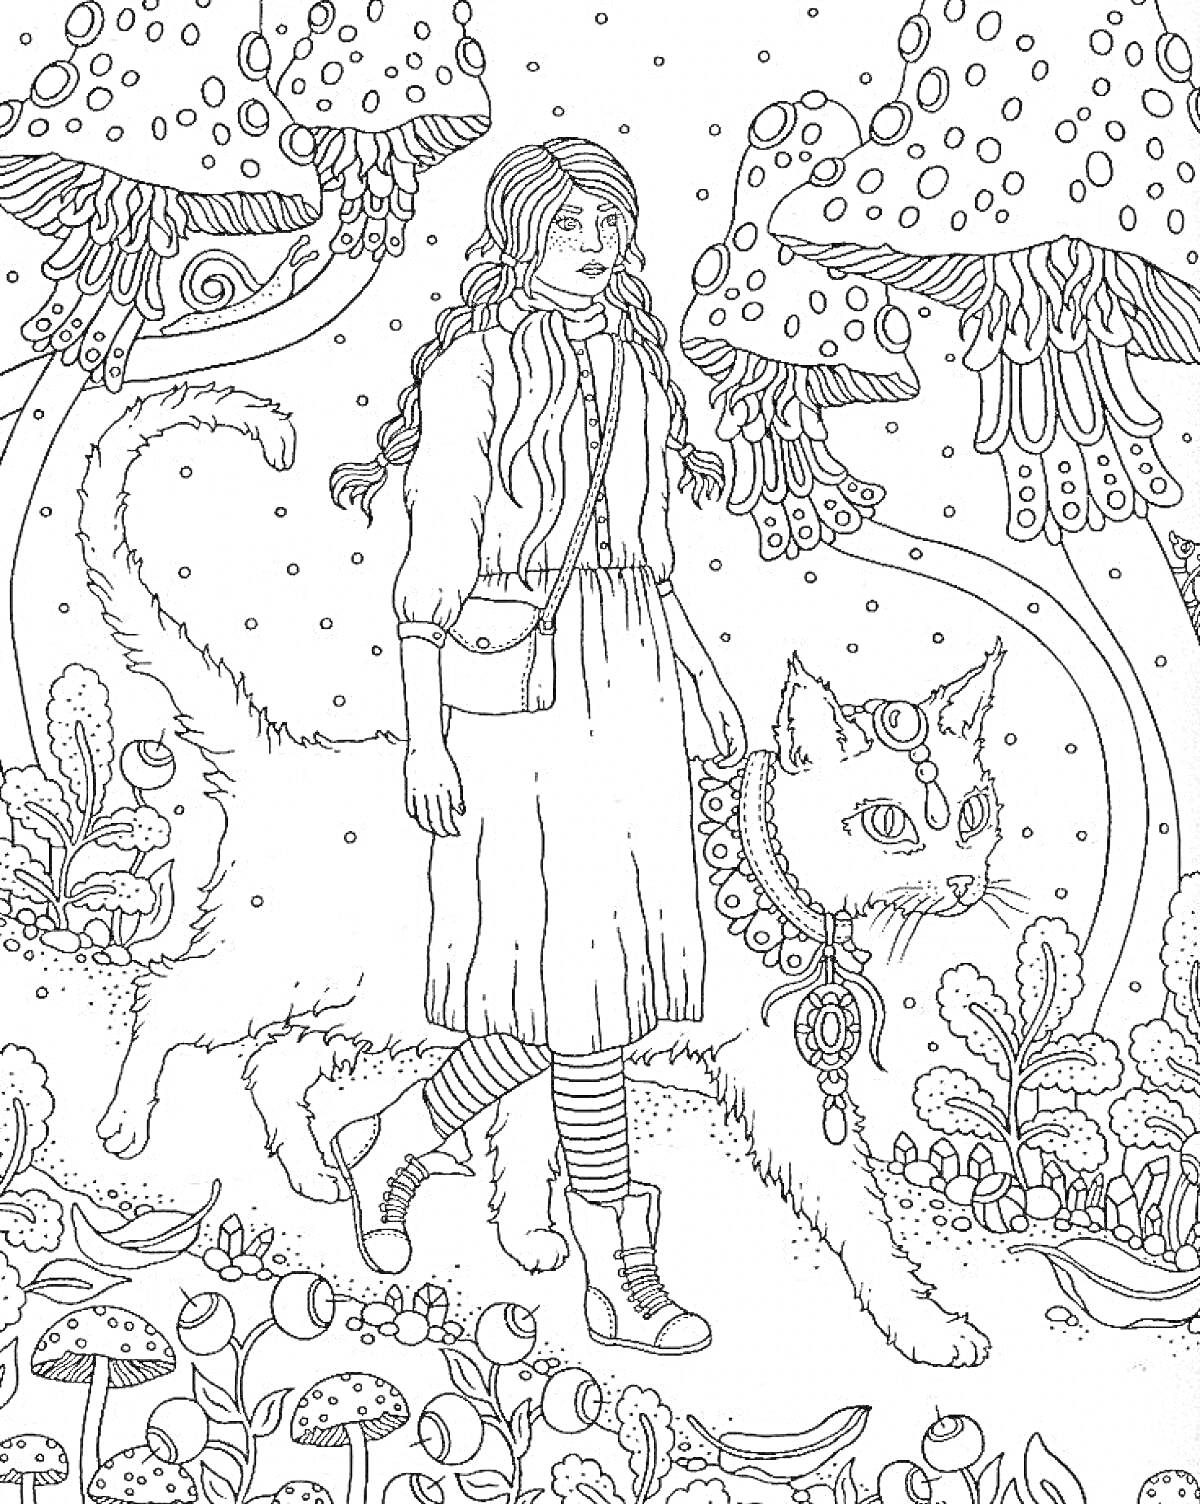 Раскраска Девушка с длинными волосами и в платье, гуляющая рядом с большим котом на фоне больших грибов и растительности